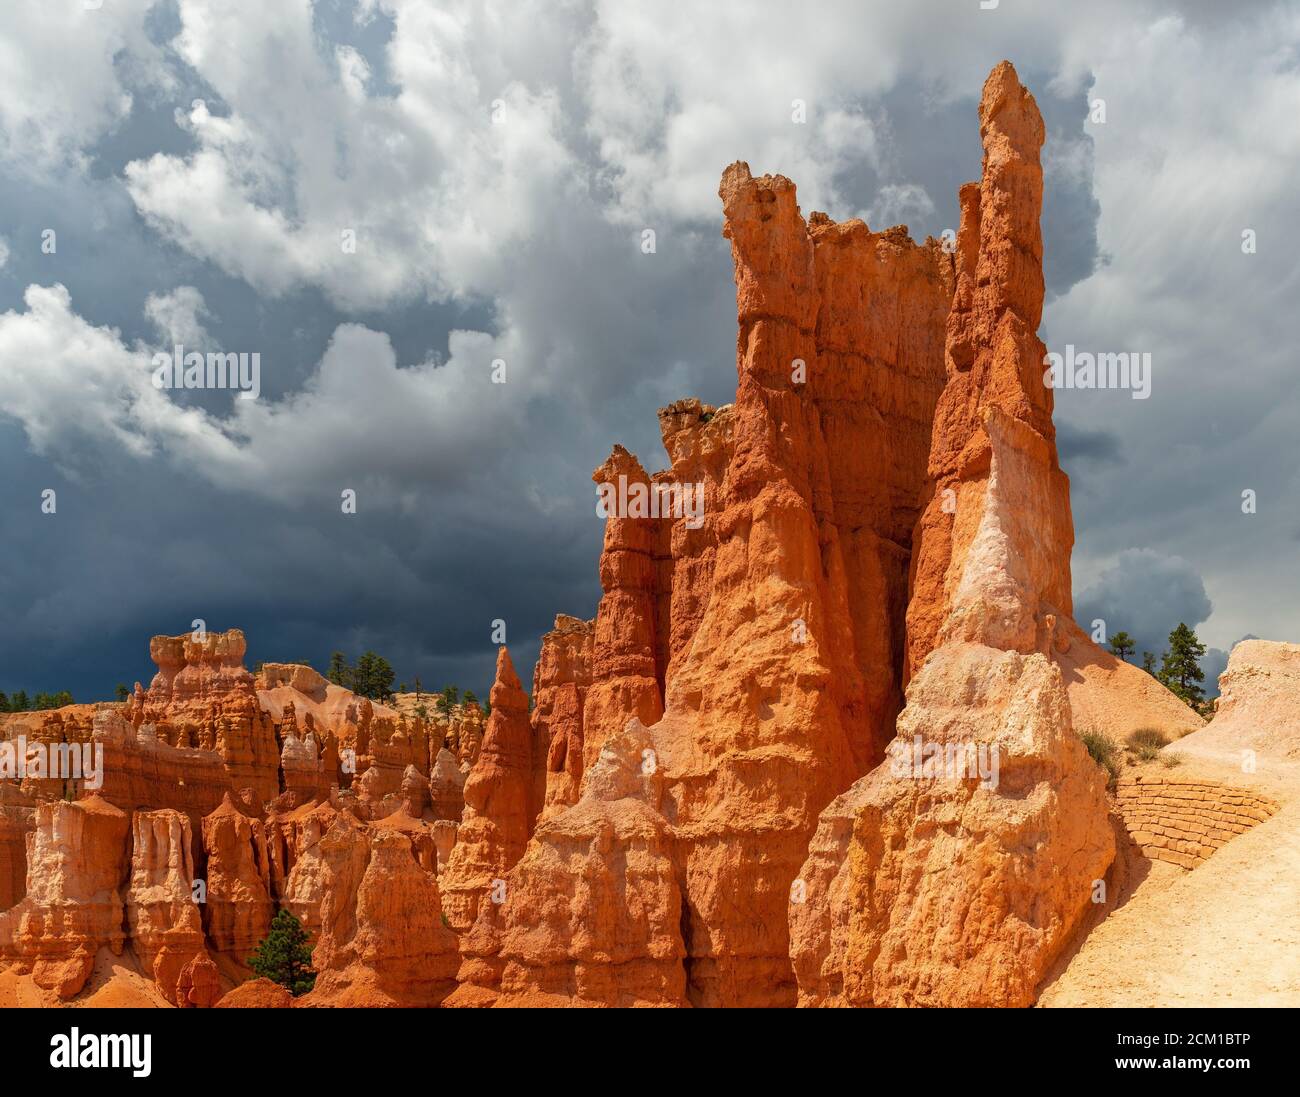 Un orage arrive dans le parc national de Bryce Canyon avec une formation rocheuse de Hoodoo ensoleillée, Utah, États-Unis d'Amérique (USA). Banque D'Images